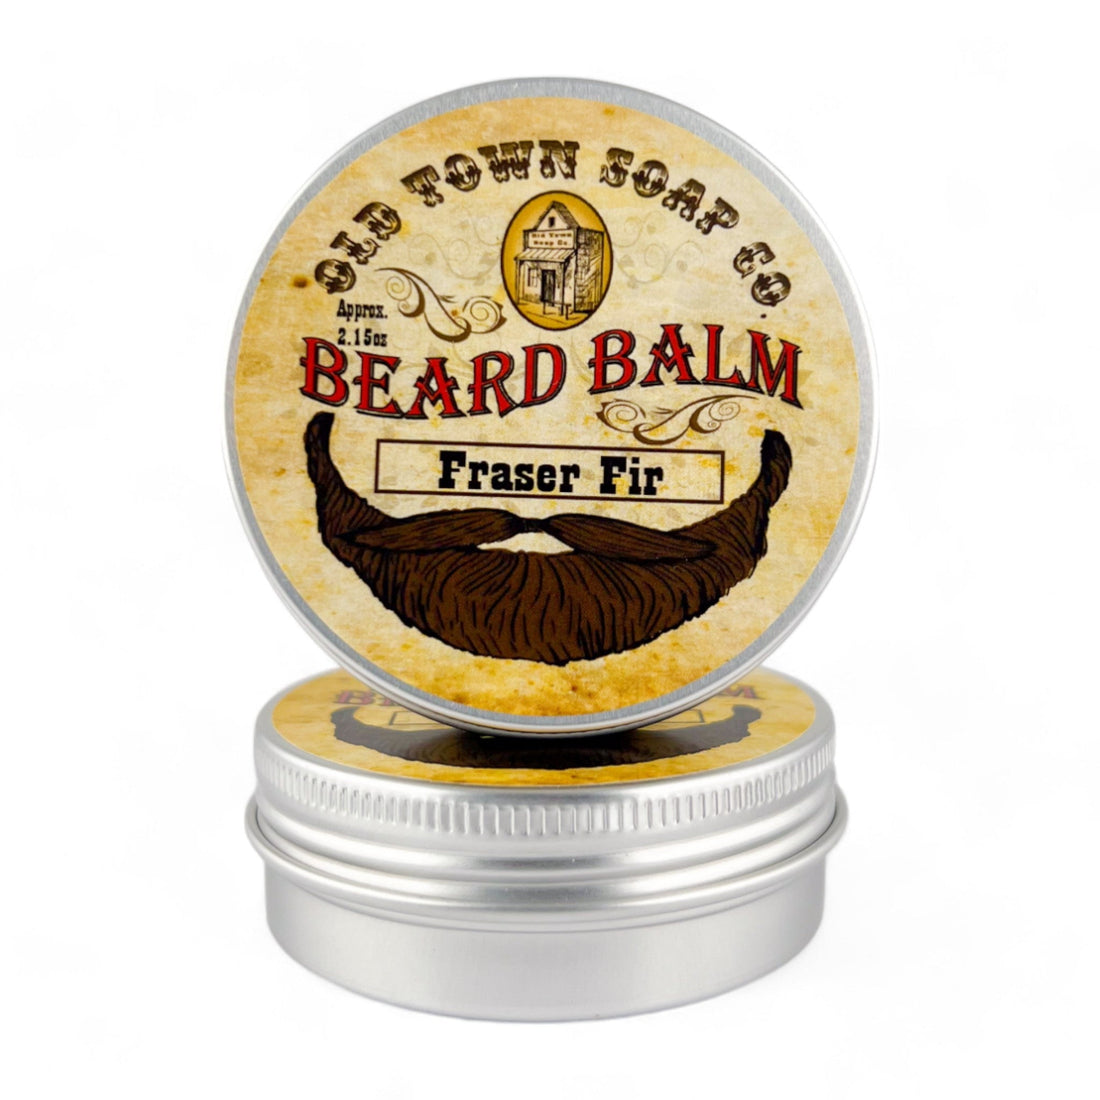 Fraser Fir Beard Balm - Old Town Soap Co.